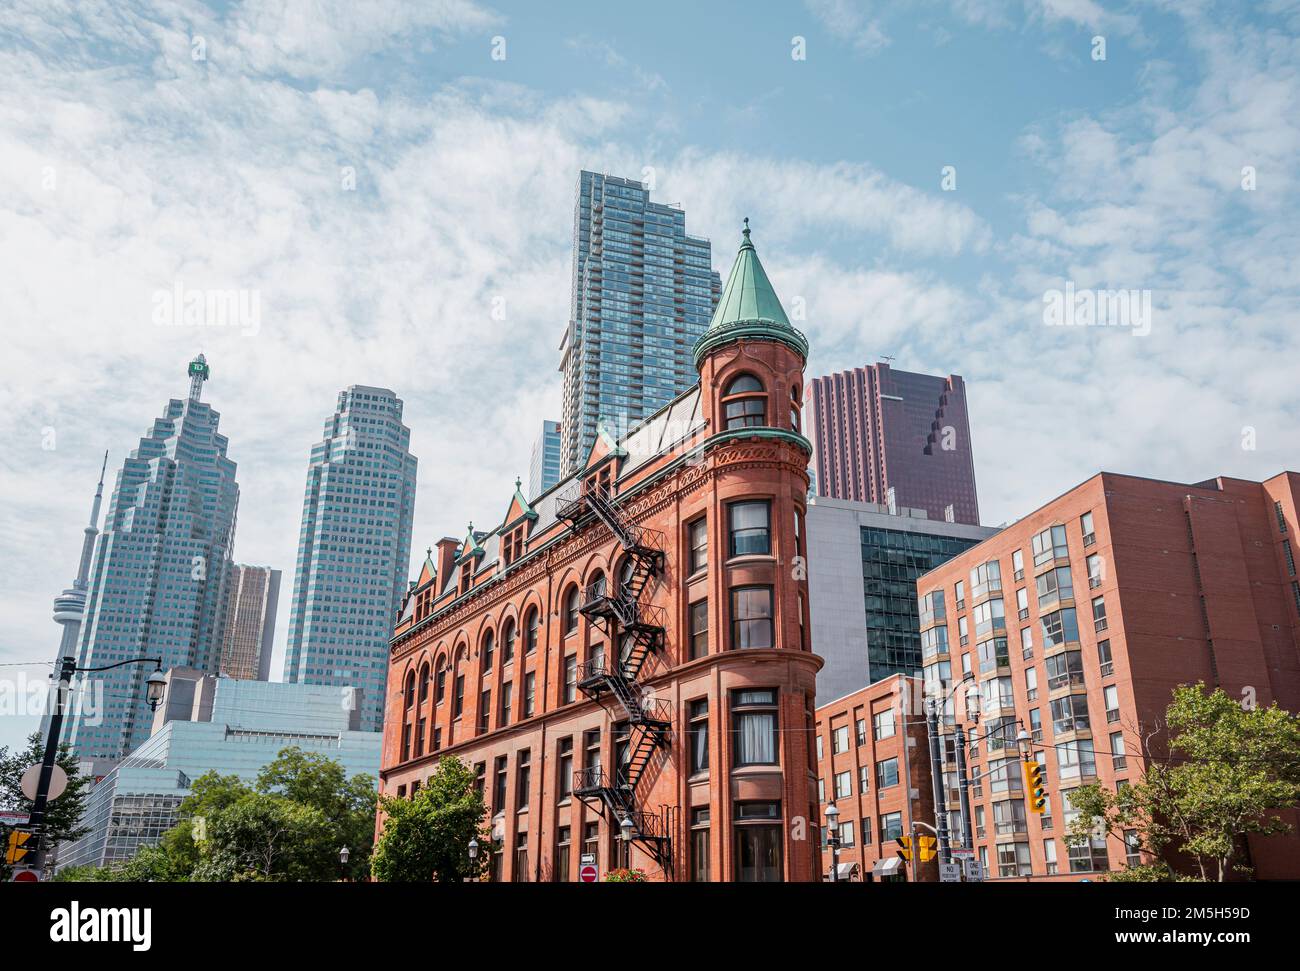 Toronto - Kanada - Ca. August 2019. Neue und alte Architektur in der Innenstadt von Toronto. Gooderham Building bekanntes Flatiron Building wurde 1892 fertiggestellt. Archit Stockfoto